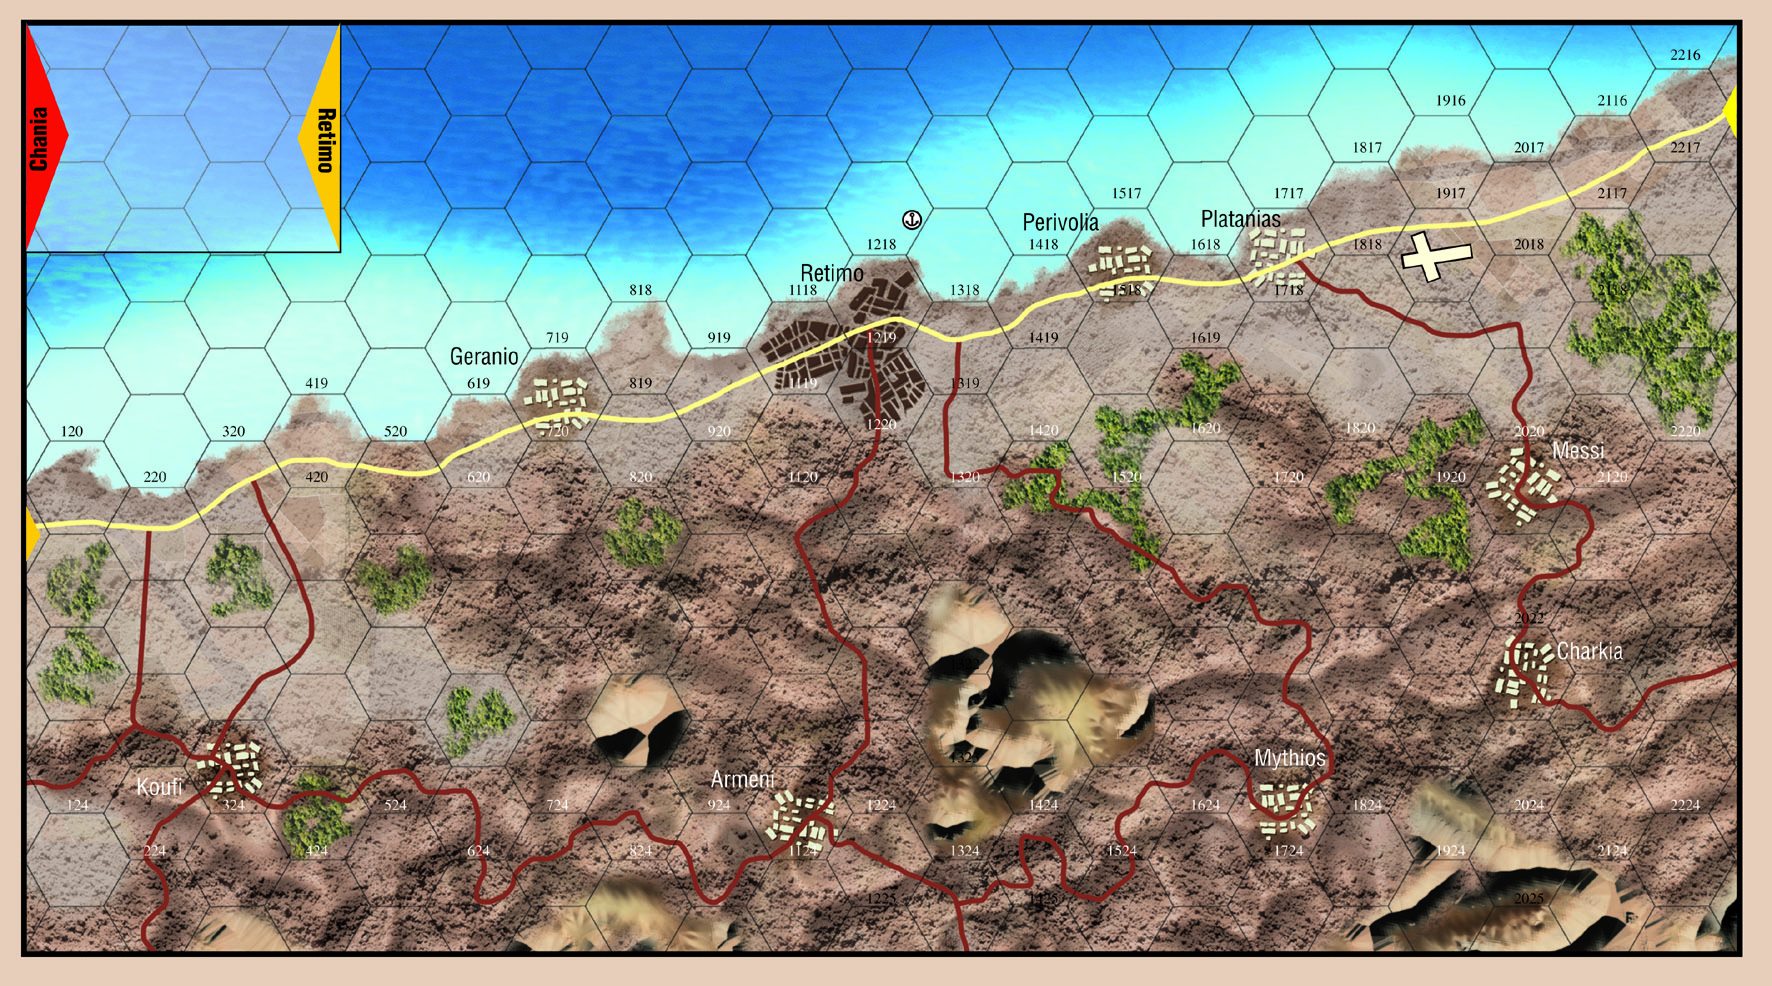 Mapa Krety z planszowej gry wojennej Fallshirm 1940